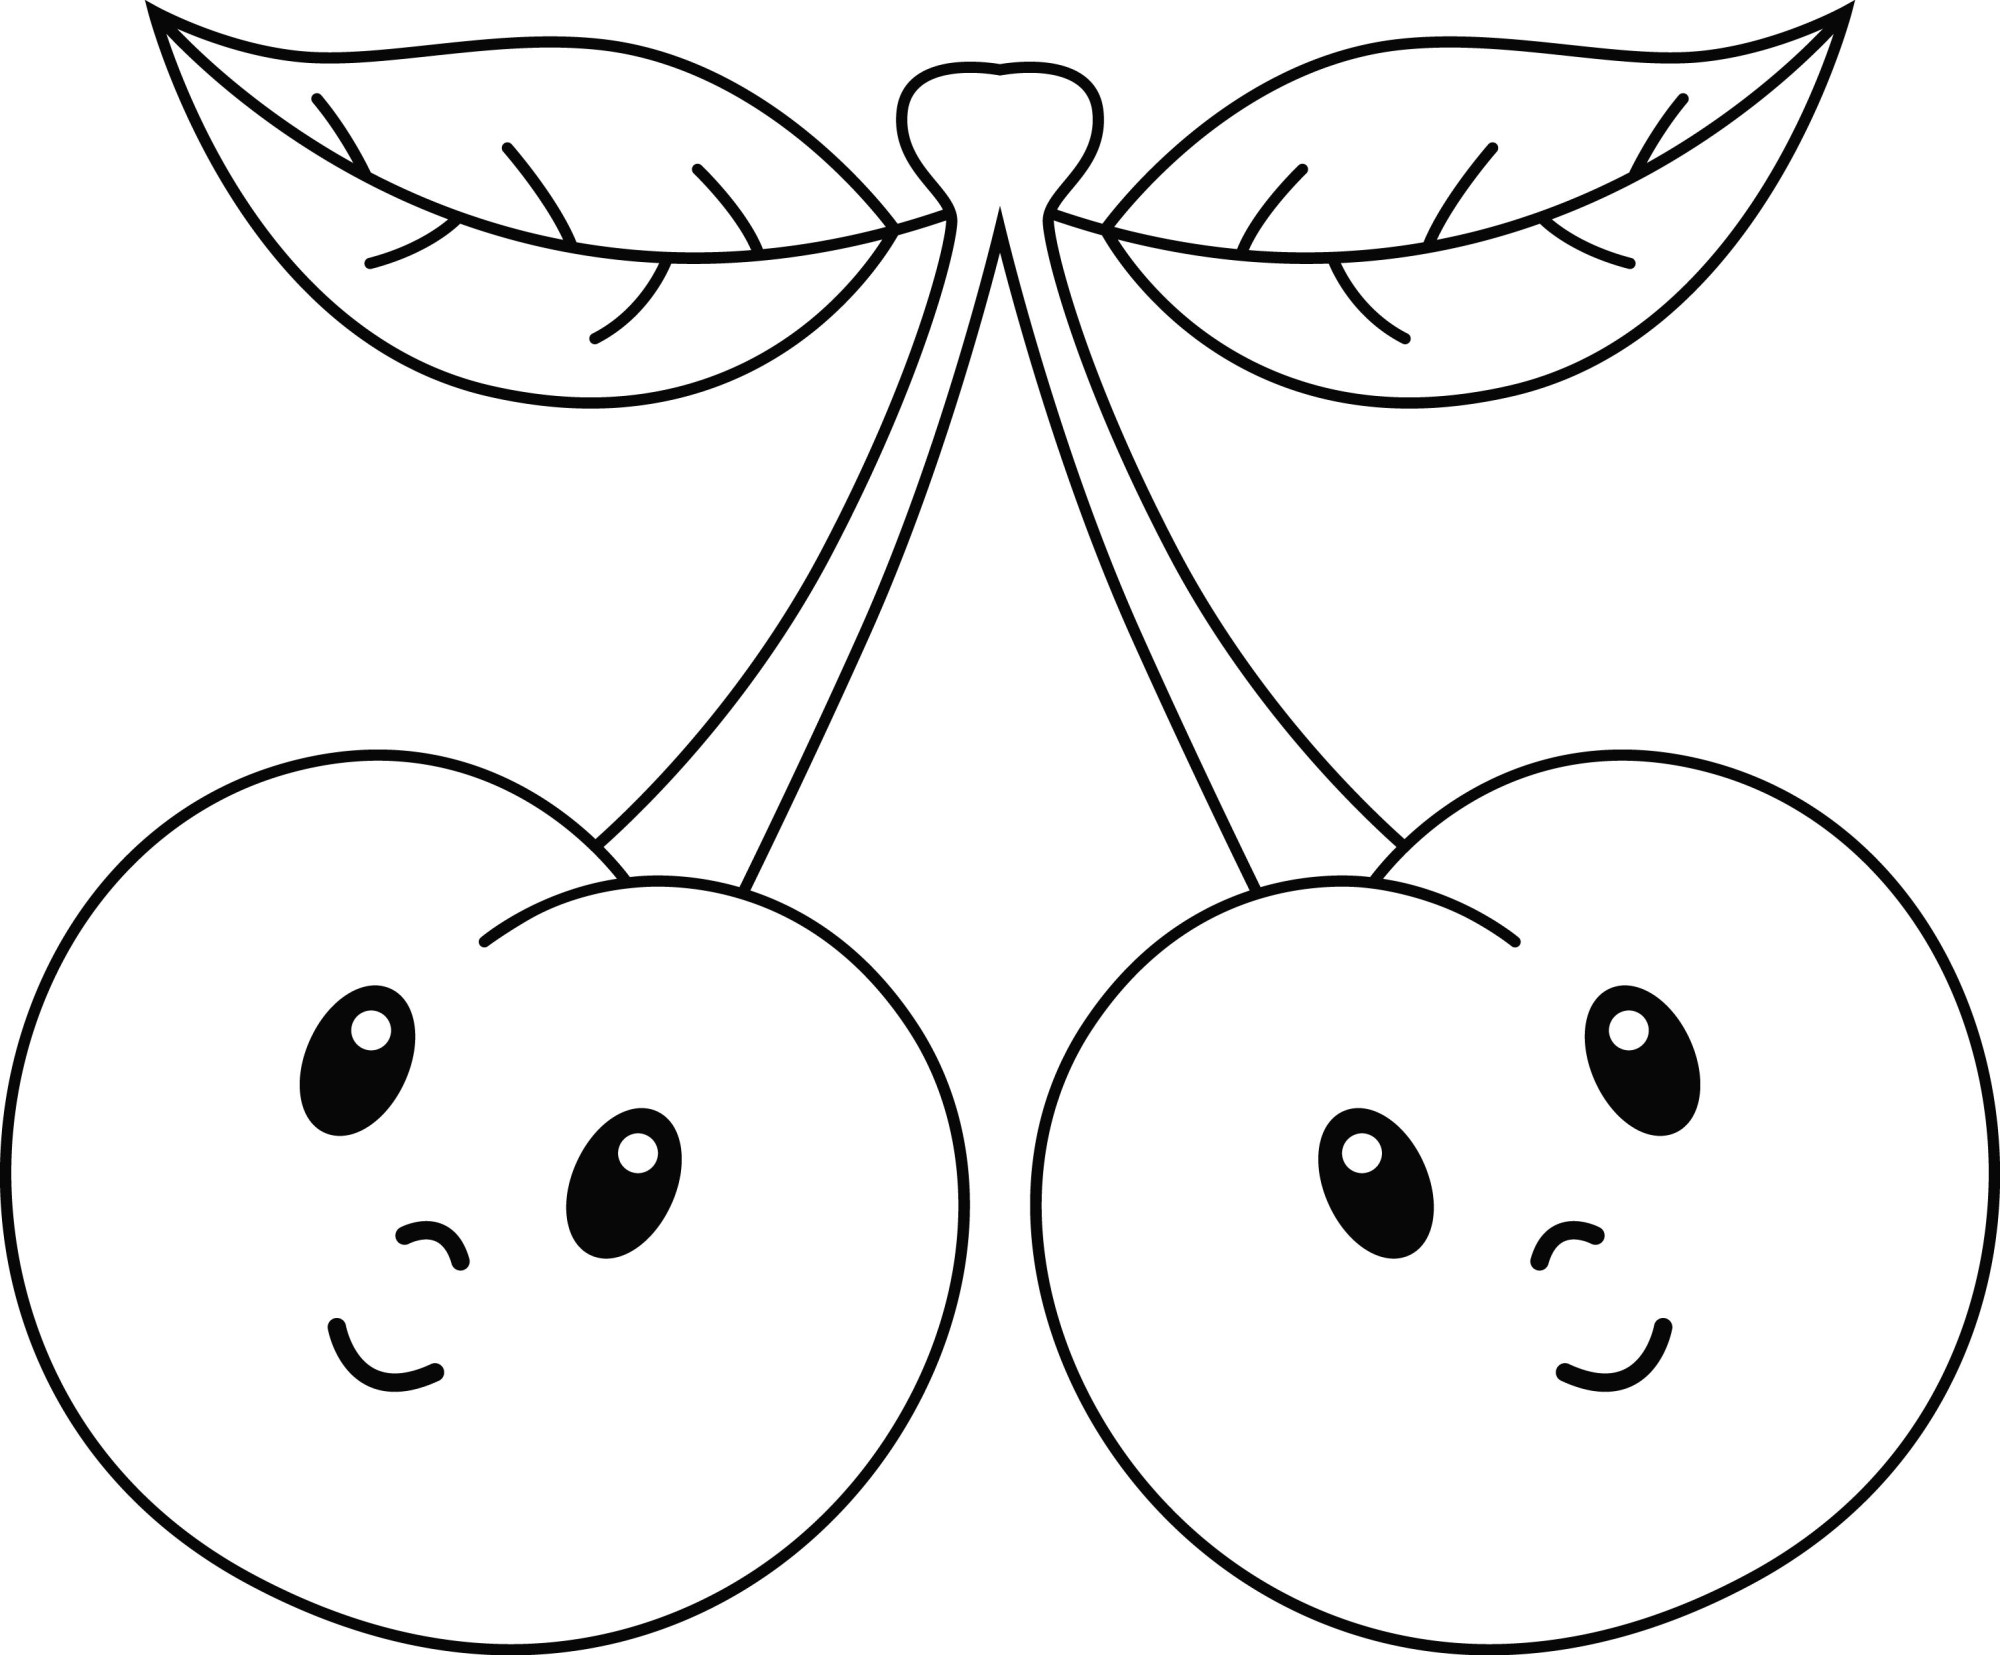 Раскраска для детей: две сказочные ягодки вишни